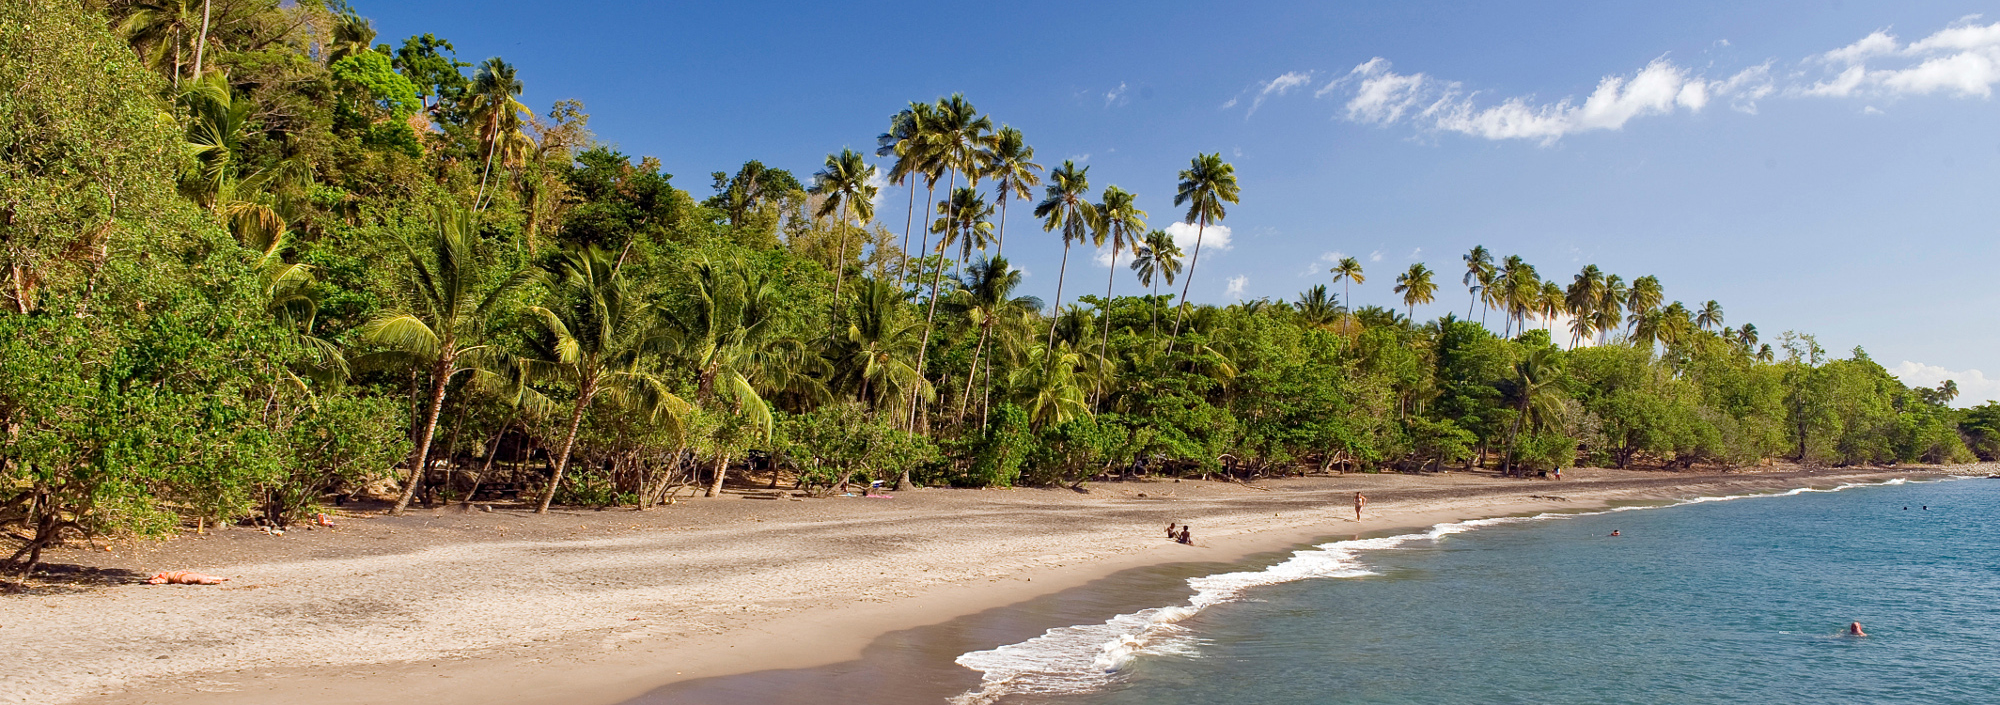 Strand der Anse Couleuvre auf Martinique mit Palmen und Sandstrand